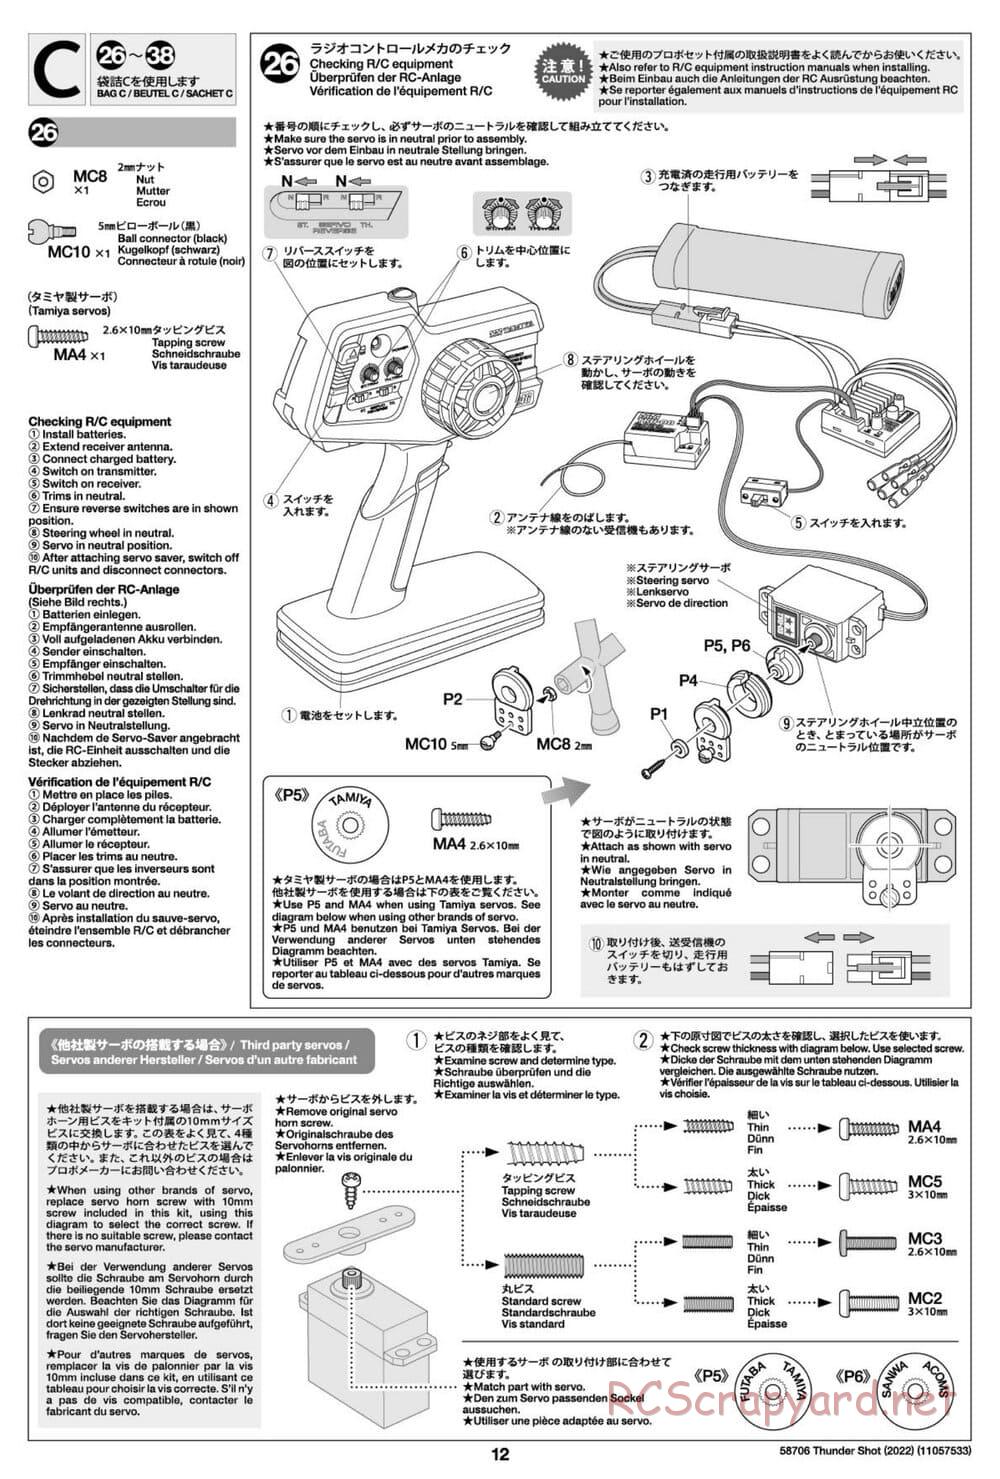 Tamiya - Thunder Shot (2022) - TS1/TS2 Chassis - Manual - Page 12